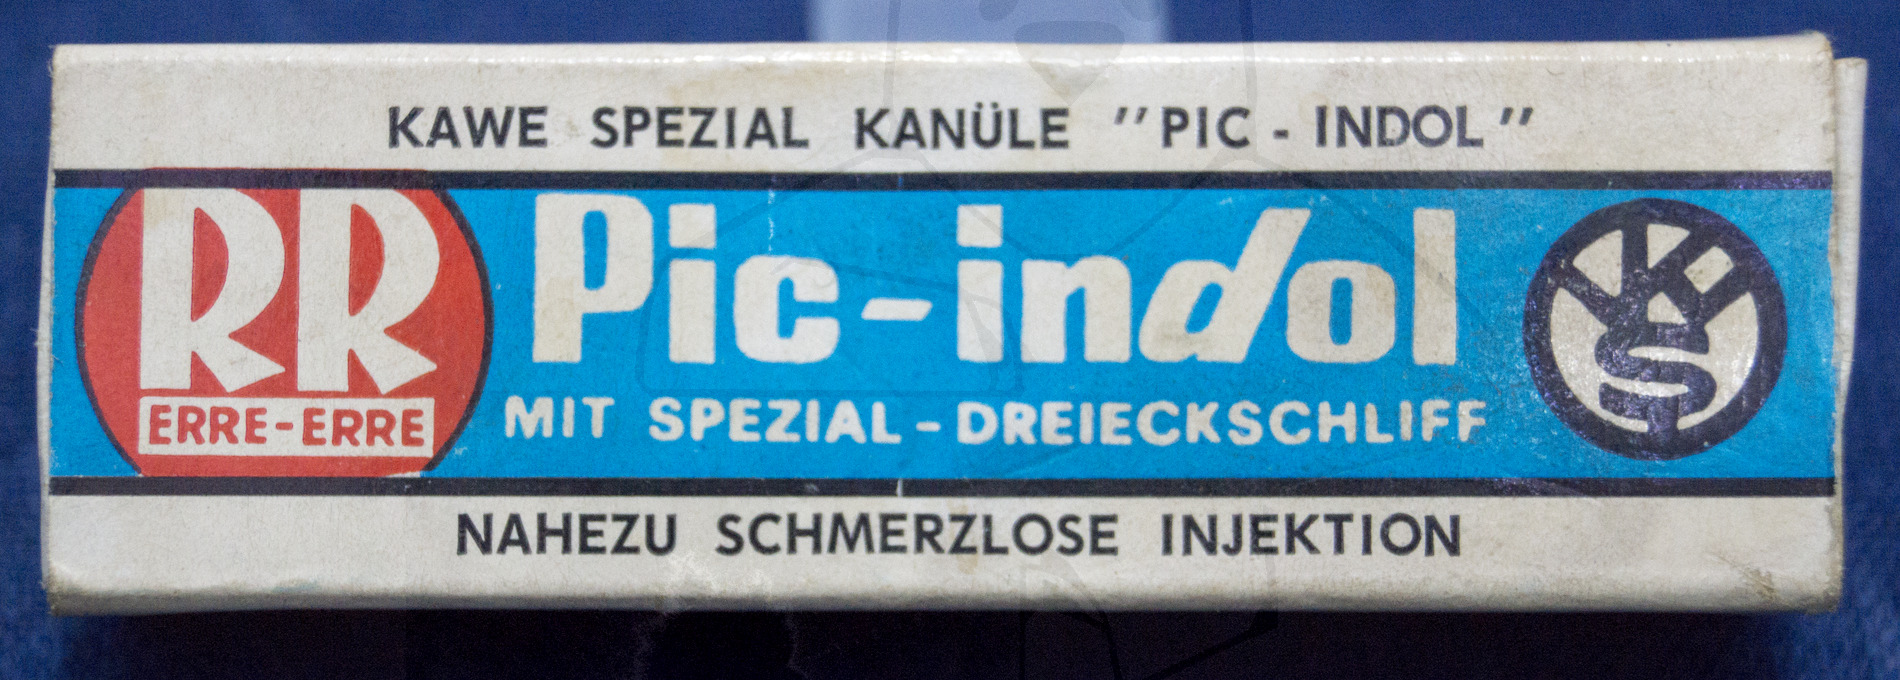 Mehrweg Kanüle mit "Spezial Dreieck Schliff", ca. Ende 1960'er Jahre, Originalverpackung